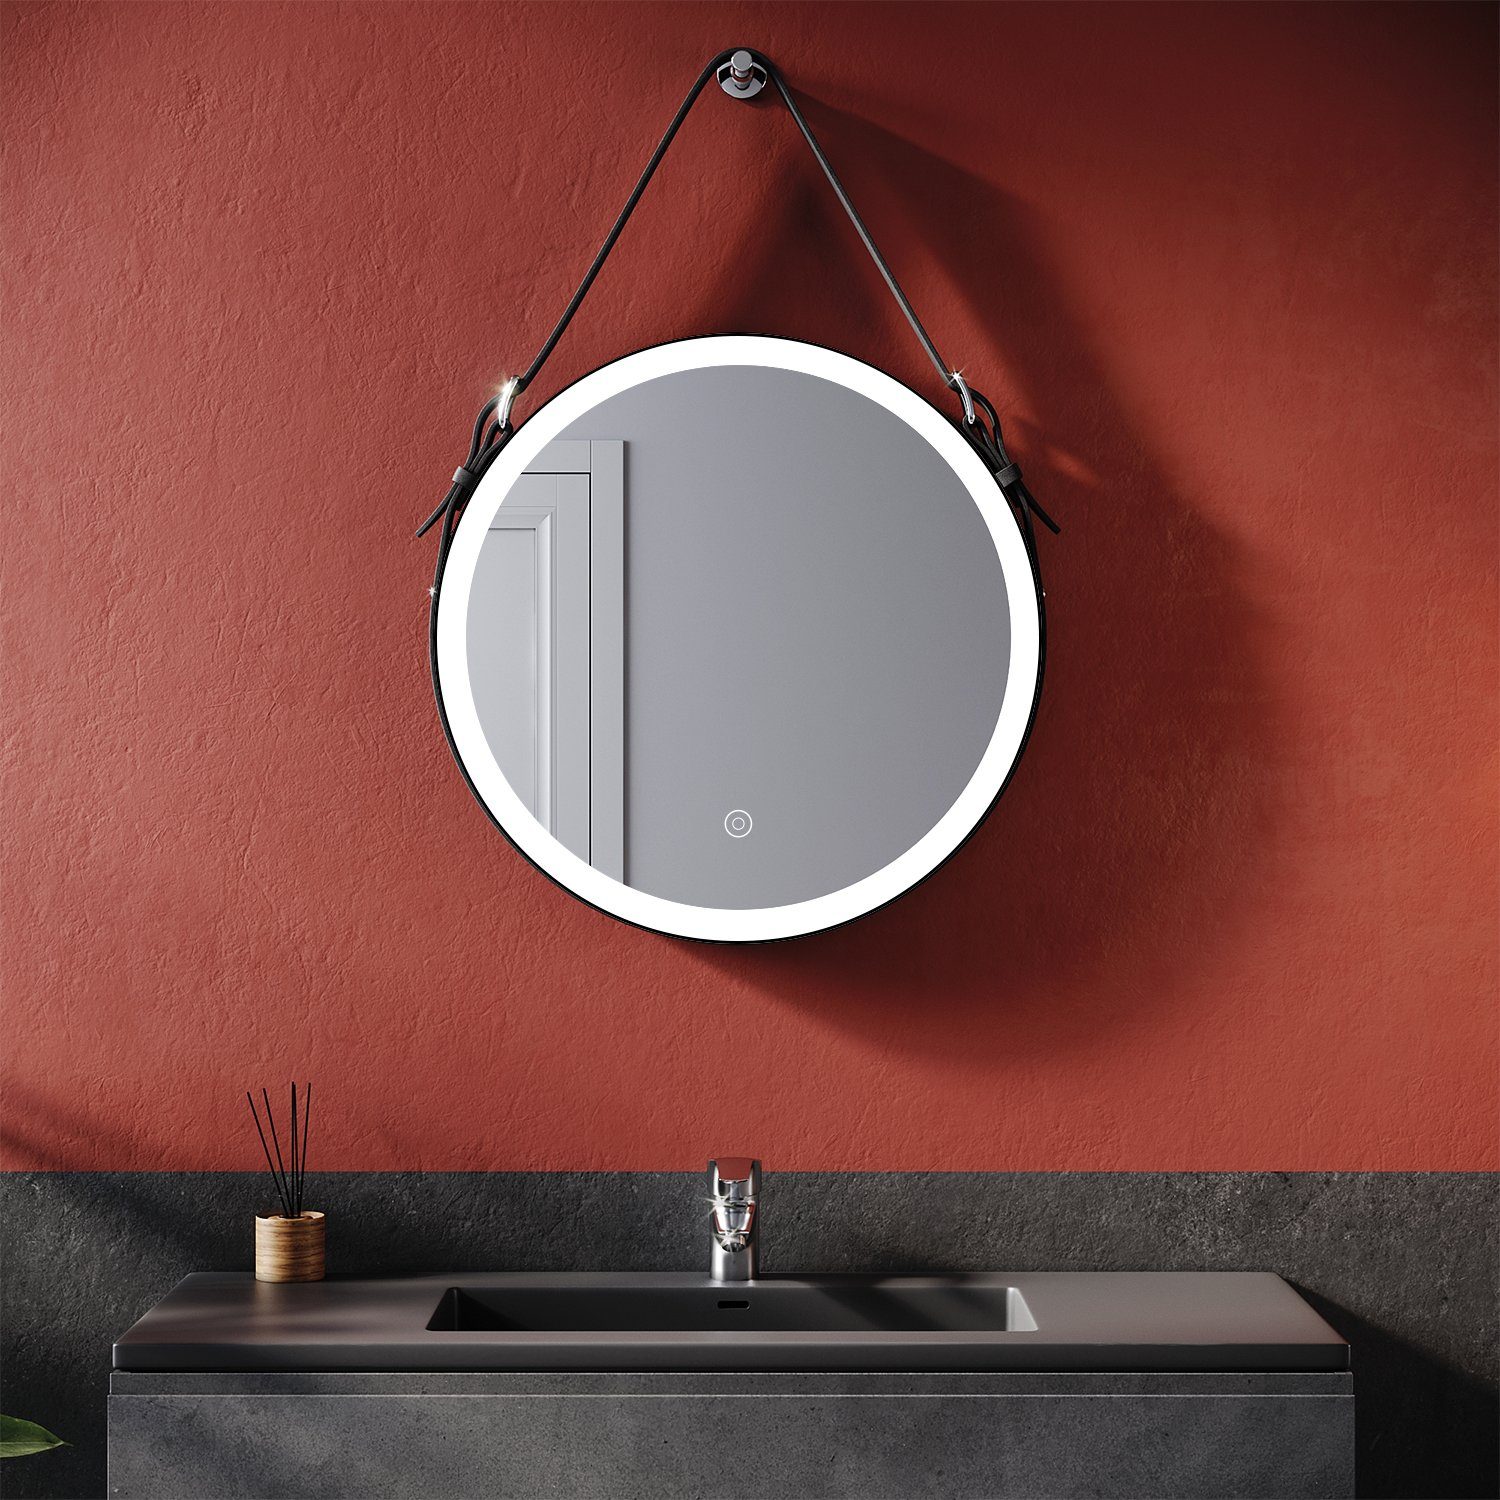 LED Badspiegel Rund  Ø 60cm Wandspiegel Touch Badezimmerspiegel Wandspiegel Rund 